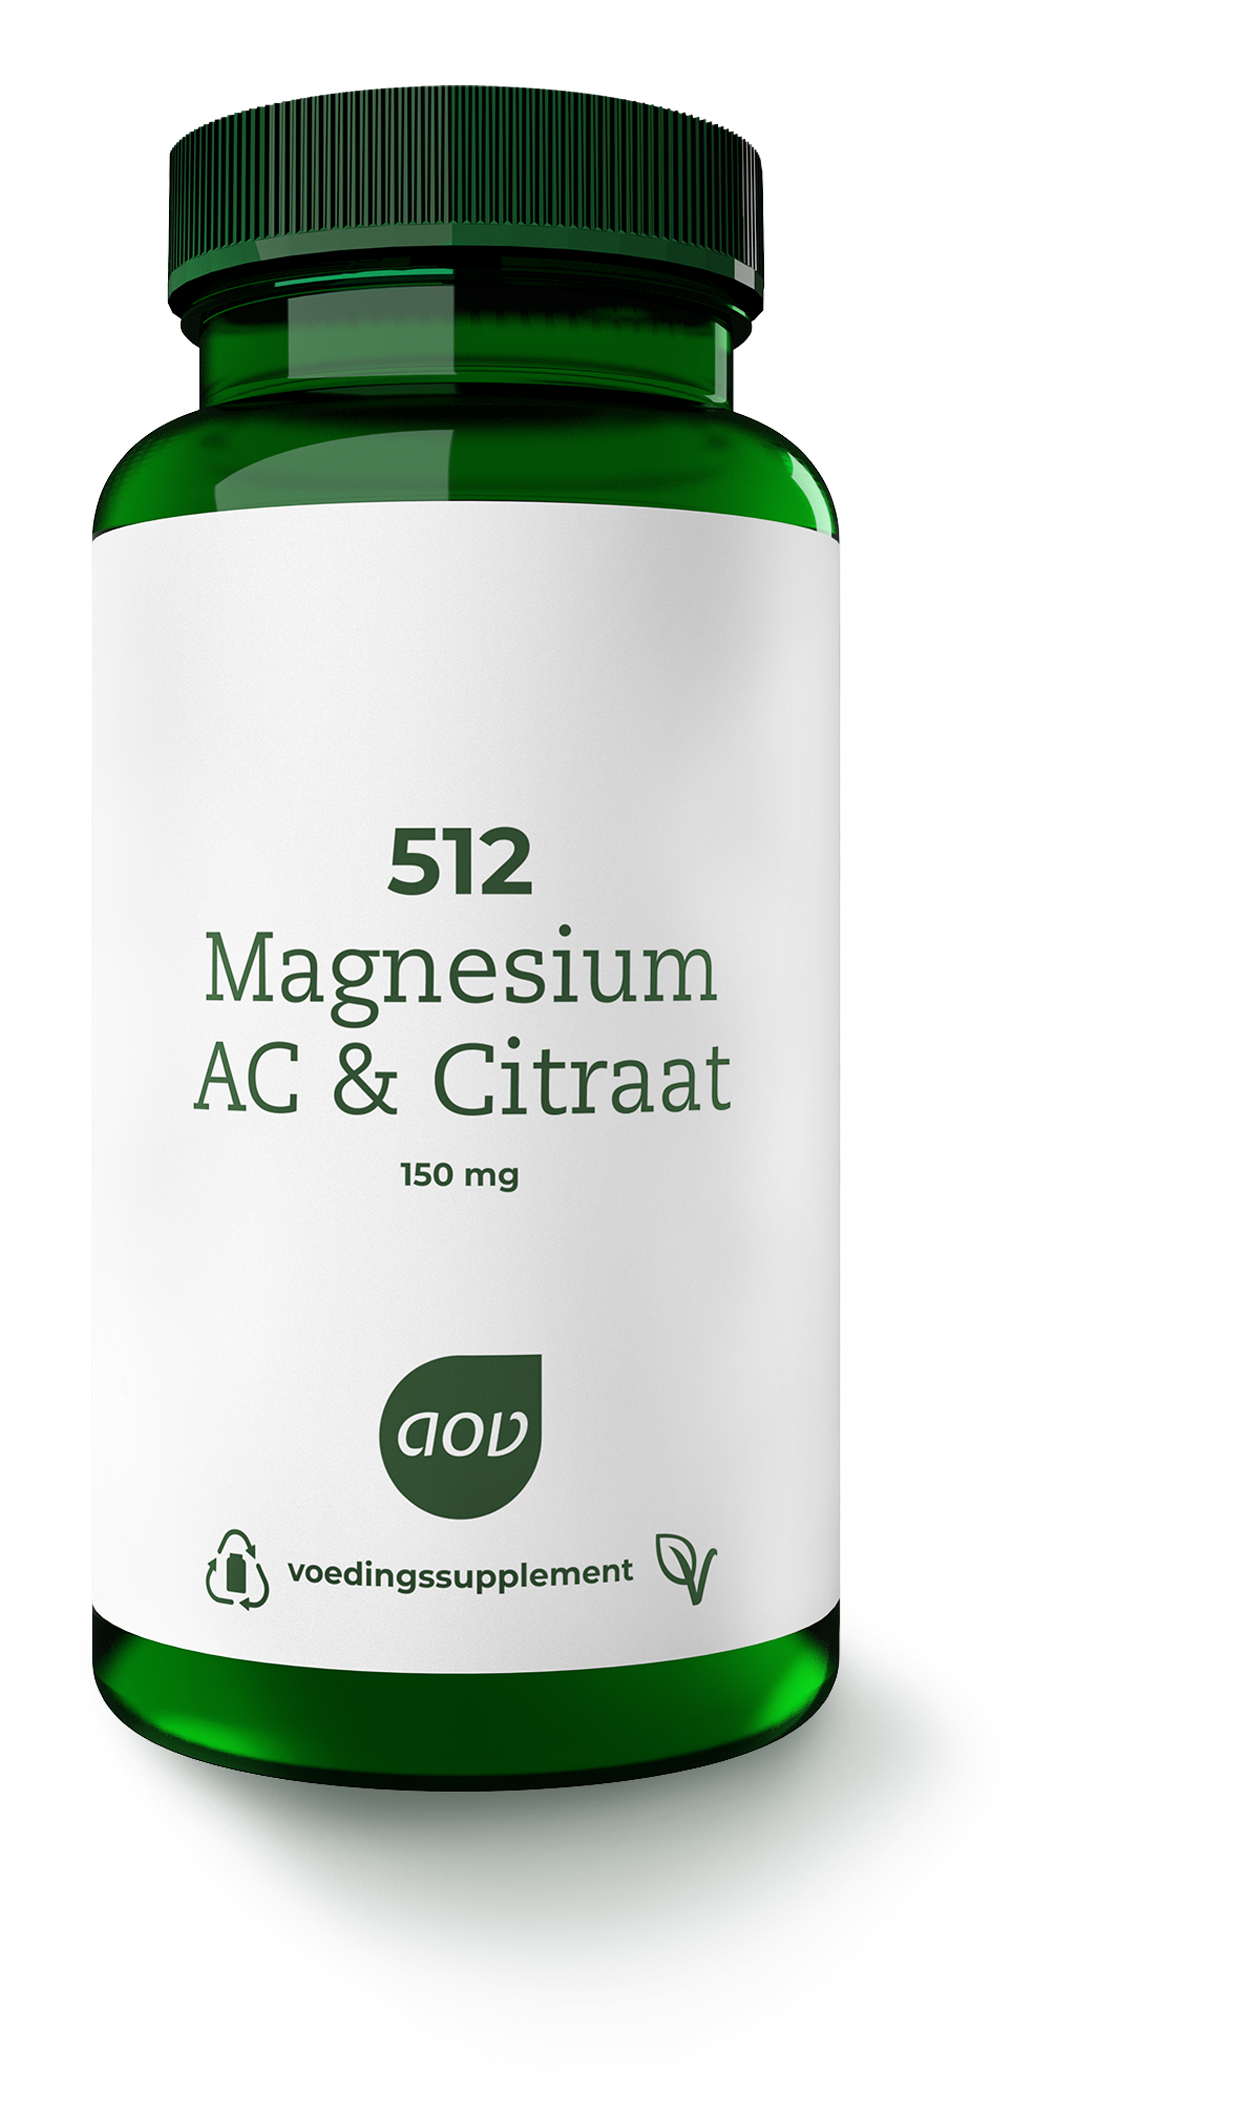 Magnesium AC & Citraat (150 mg) - 60 tab - 512